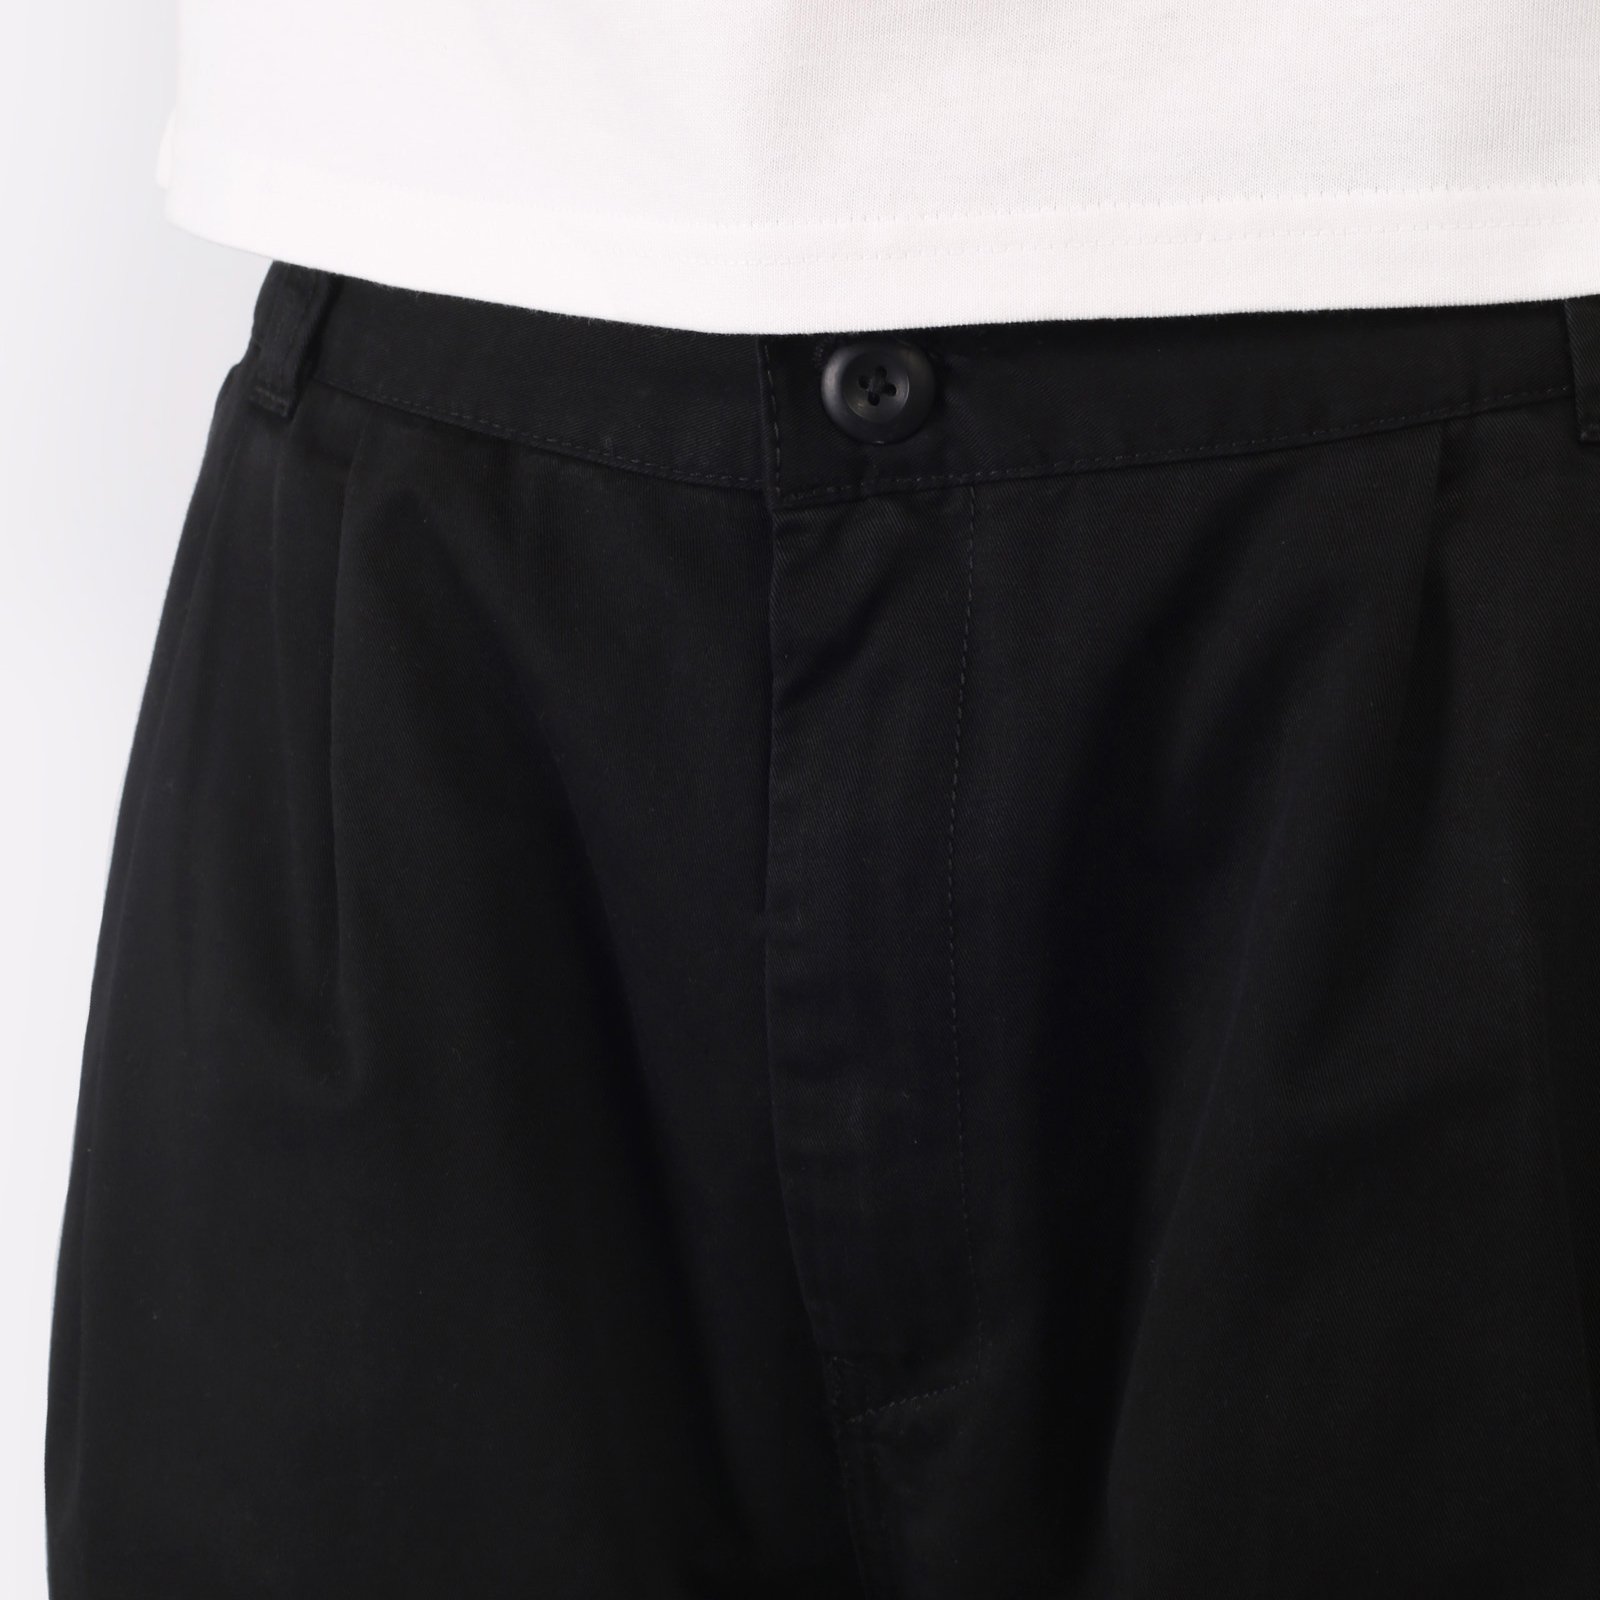 мужские черные брюки Carhartt WIP Marv Pant I033129-black - цена, описание, фото 4